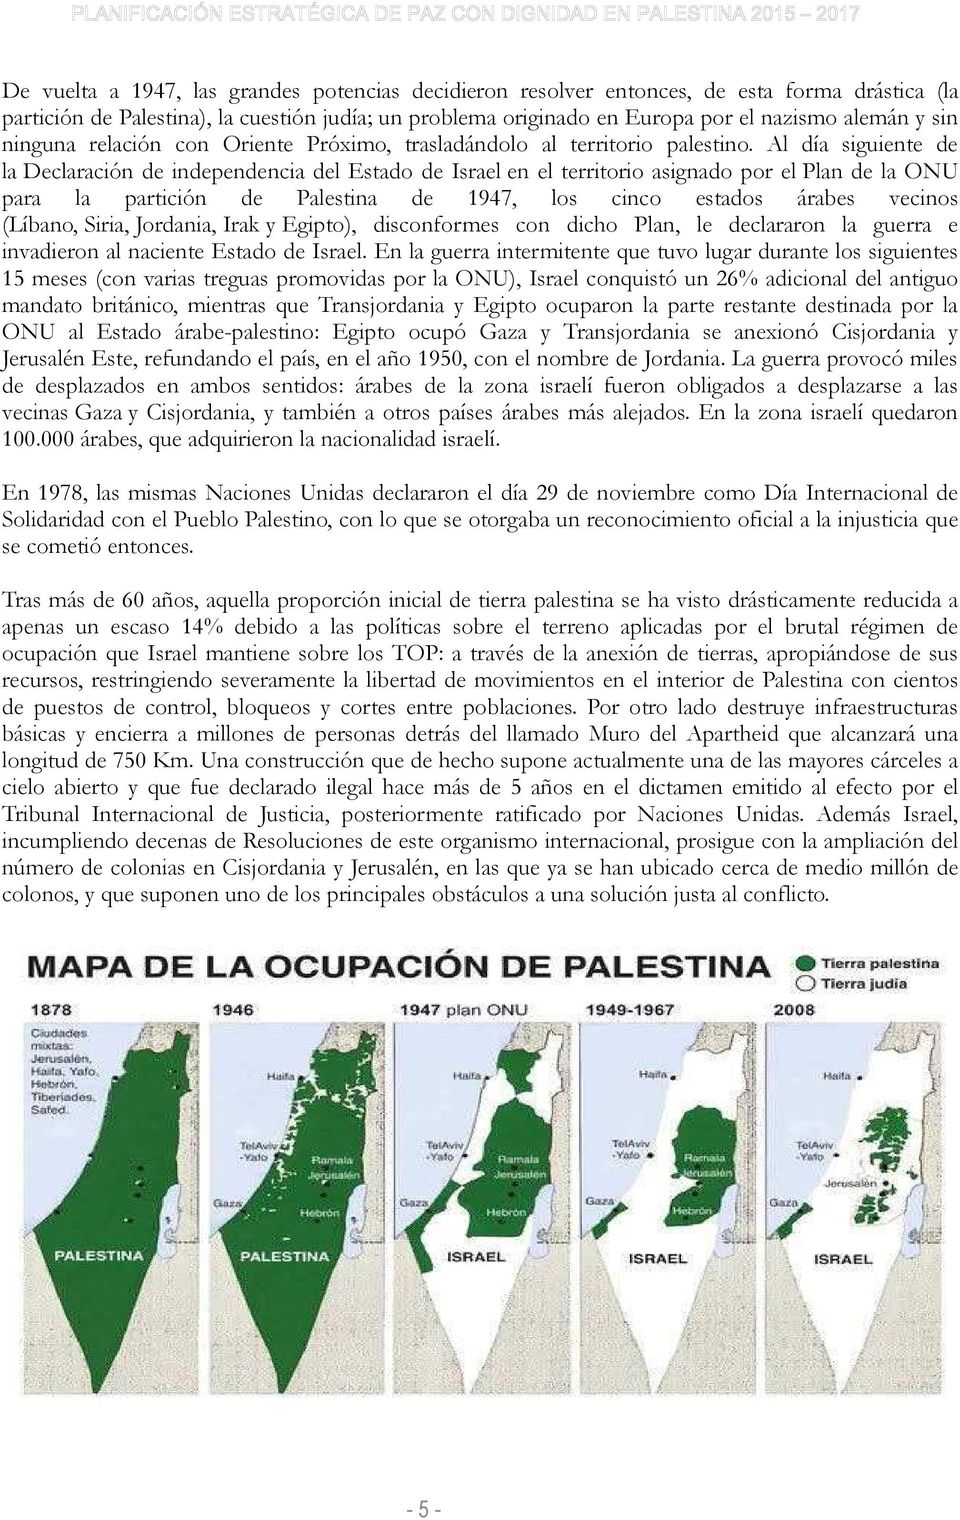 Al día siguiente de la Declaración de independencia del Estado de Israel en el territorio asignado por el Plan de la ONU para la partición de Palestina de 1947, los cinco estados árabes vecinos